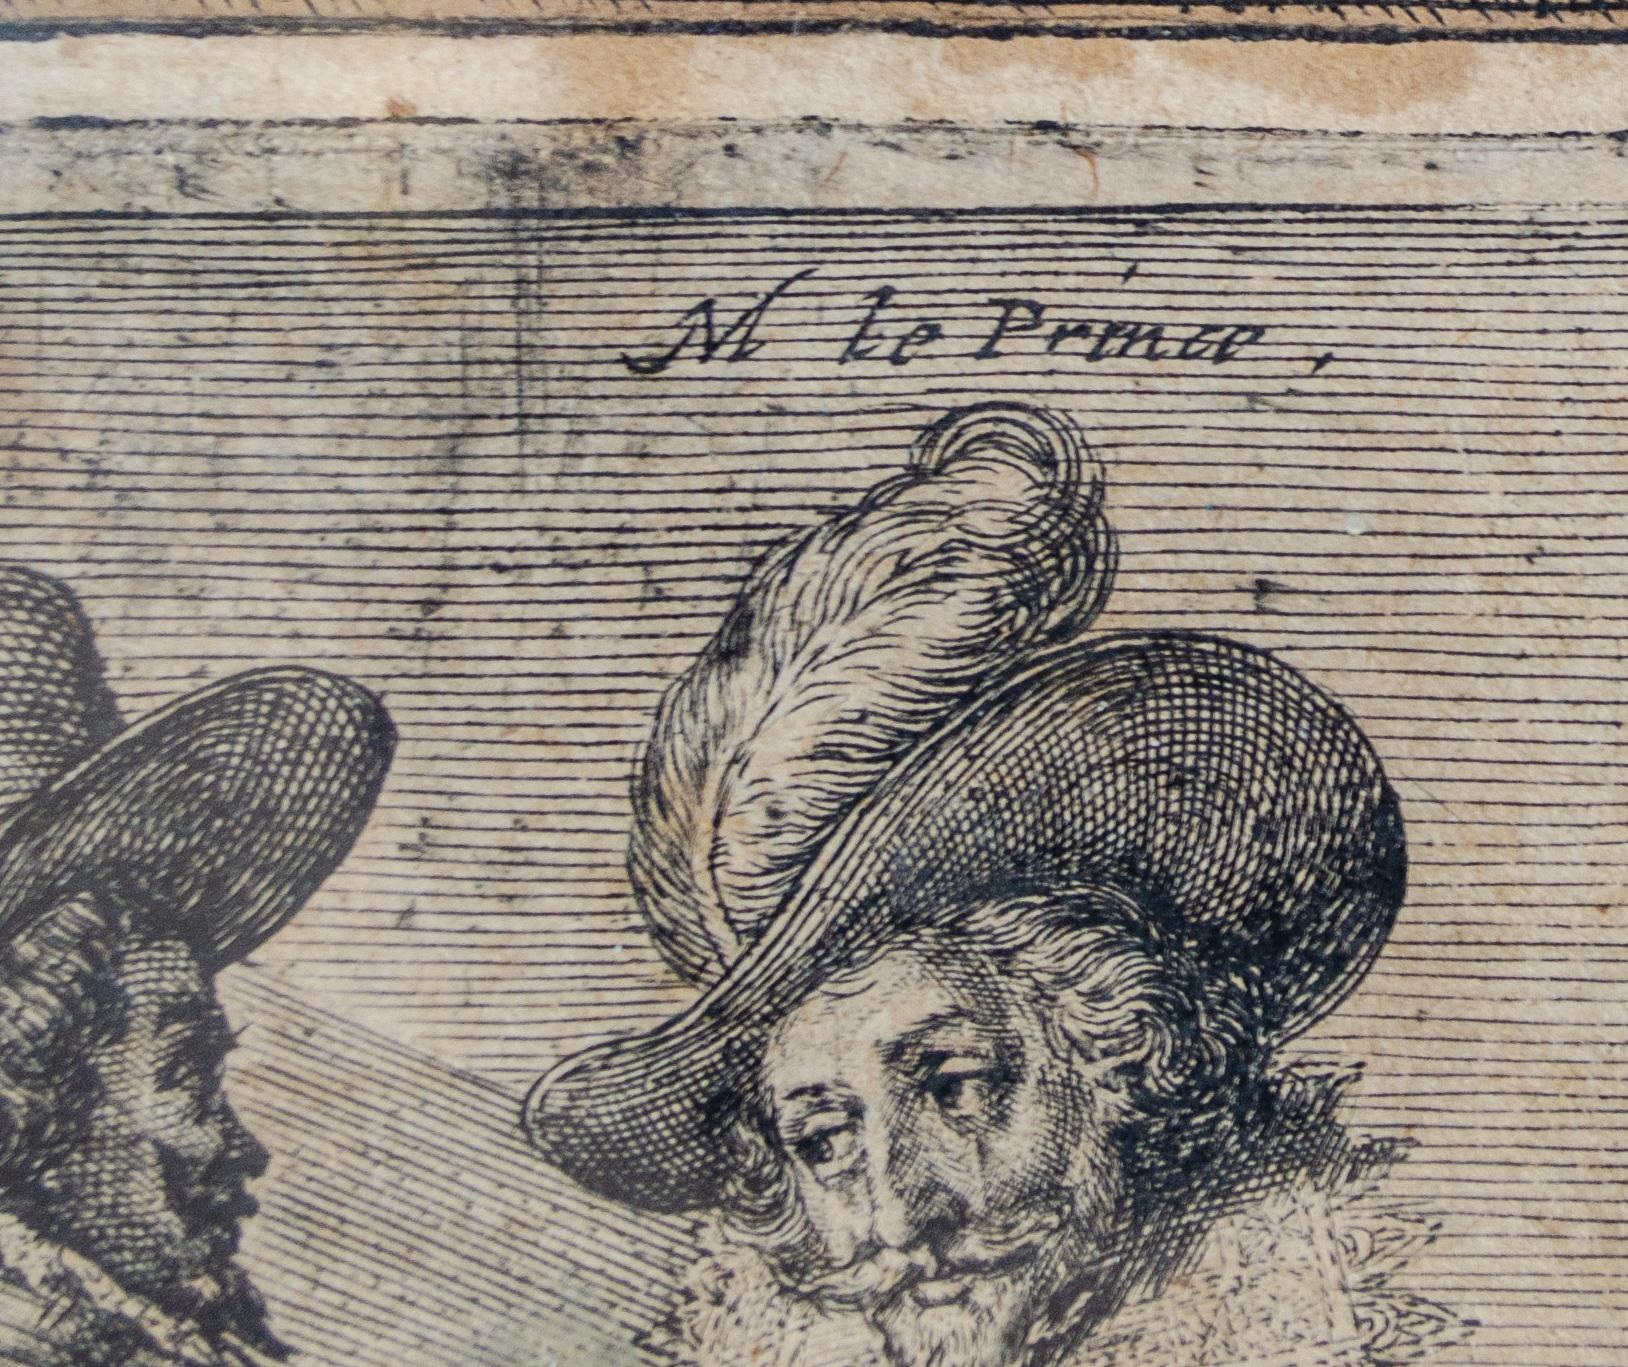 Crispin van de Passe der Jüngere (ca. 1594-1670)
Ohne Titel (Französische Adlige zu Pferd), um 1620-1660
Gravur
Ansicht: 11 3/4 x 15 3/4 Zoll.
Gerahmt: 18 3/4 x 22 5/8 Zoll.

In die Platte eingeschrieben: Le Prince

Beachten Sie, dass der weiße